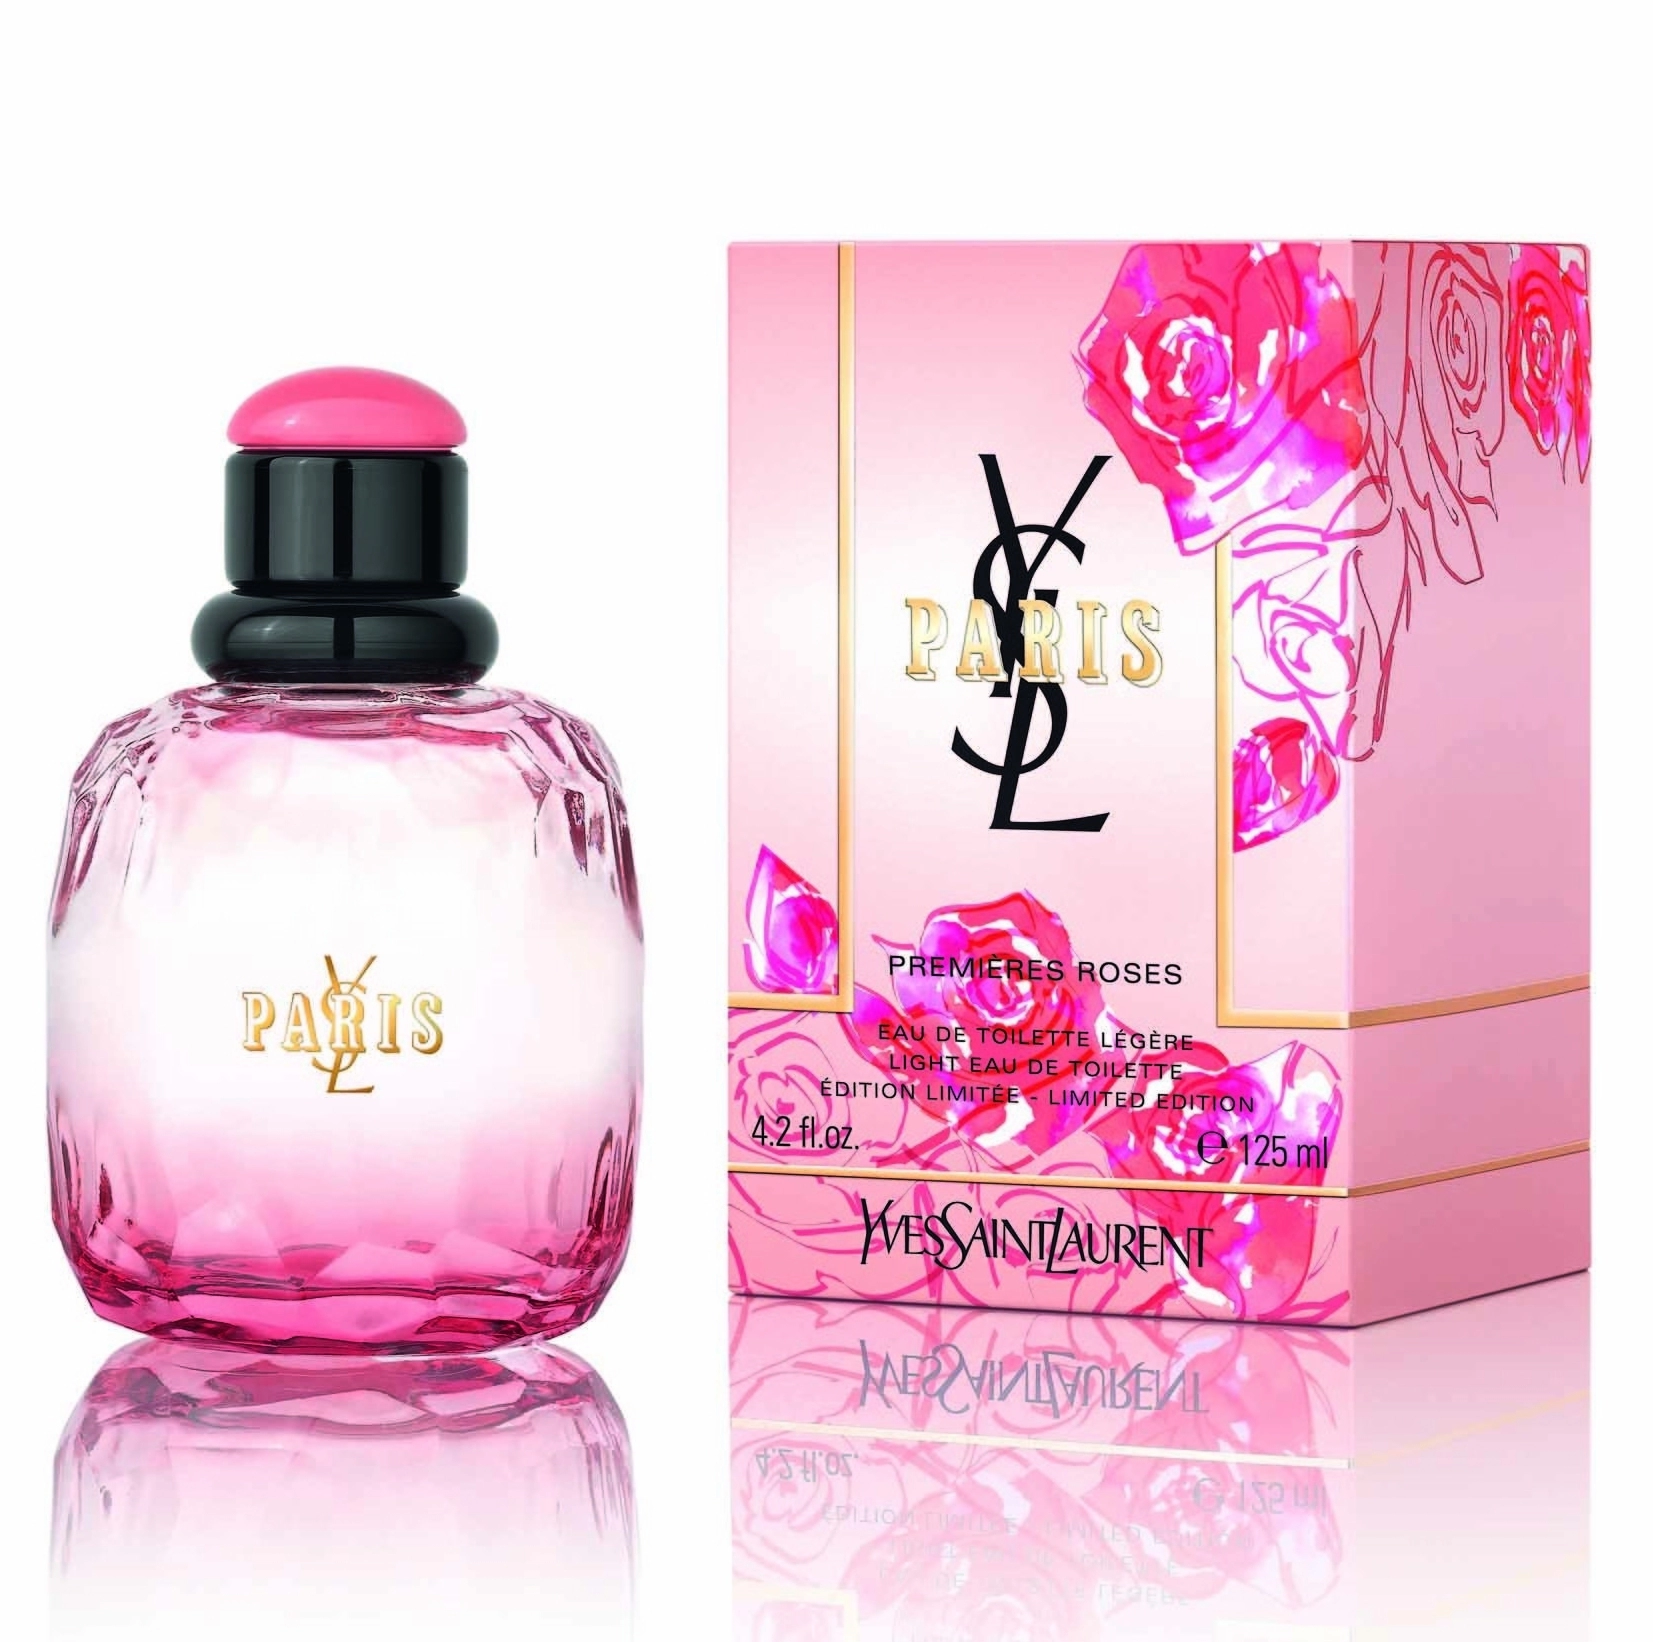 Ysl Paris Premieres Roses Edt 125ml - Parfum dama 0